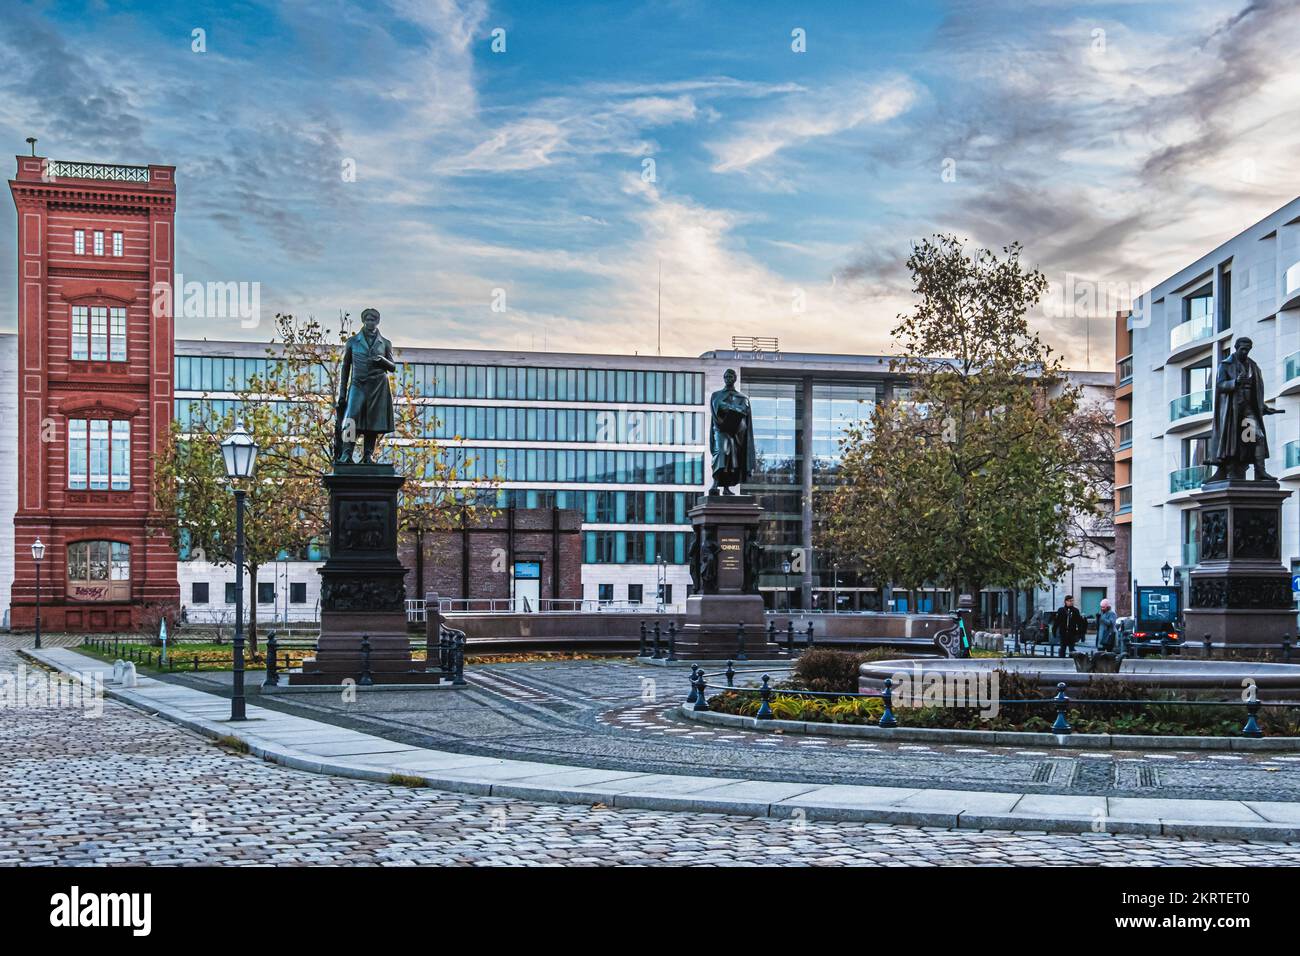 SchinkelplatzMitte, Berlino. Piazza con angolo ricostruito della facciata Bauakedemie e statue commemorative Foto Stock